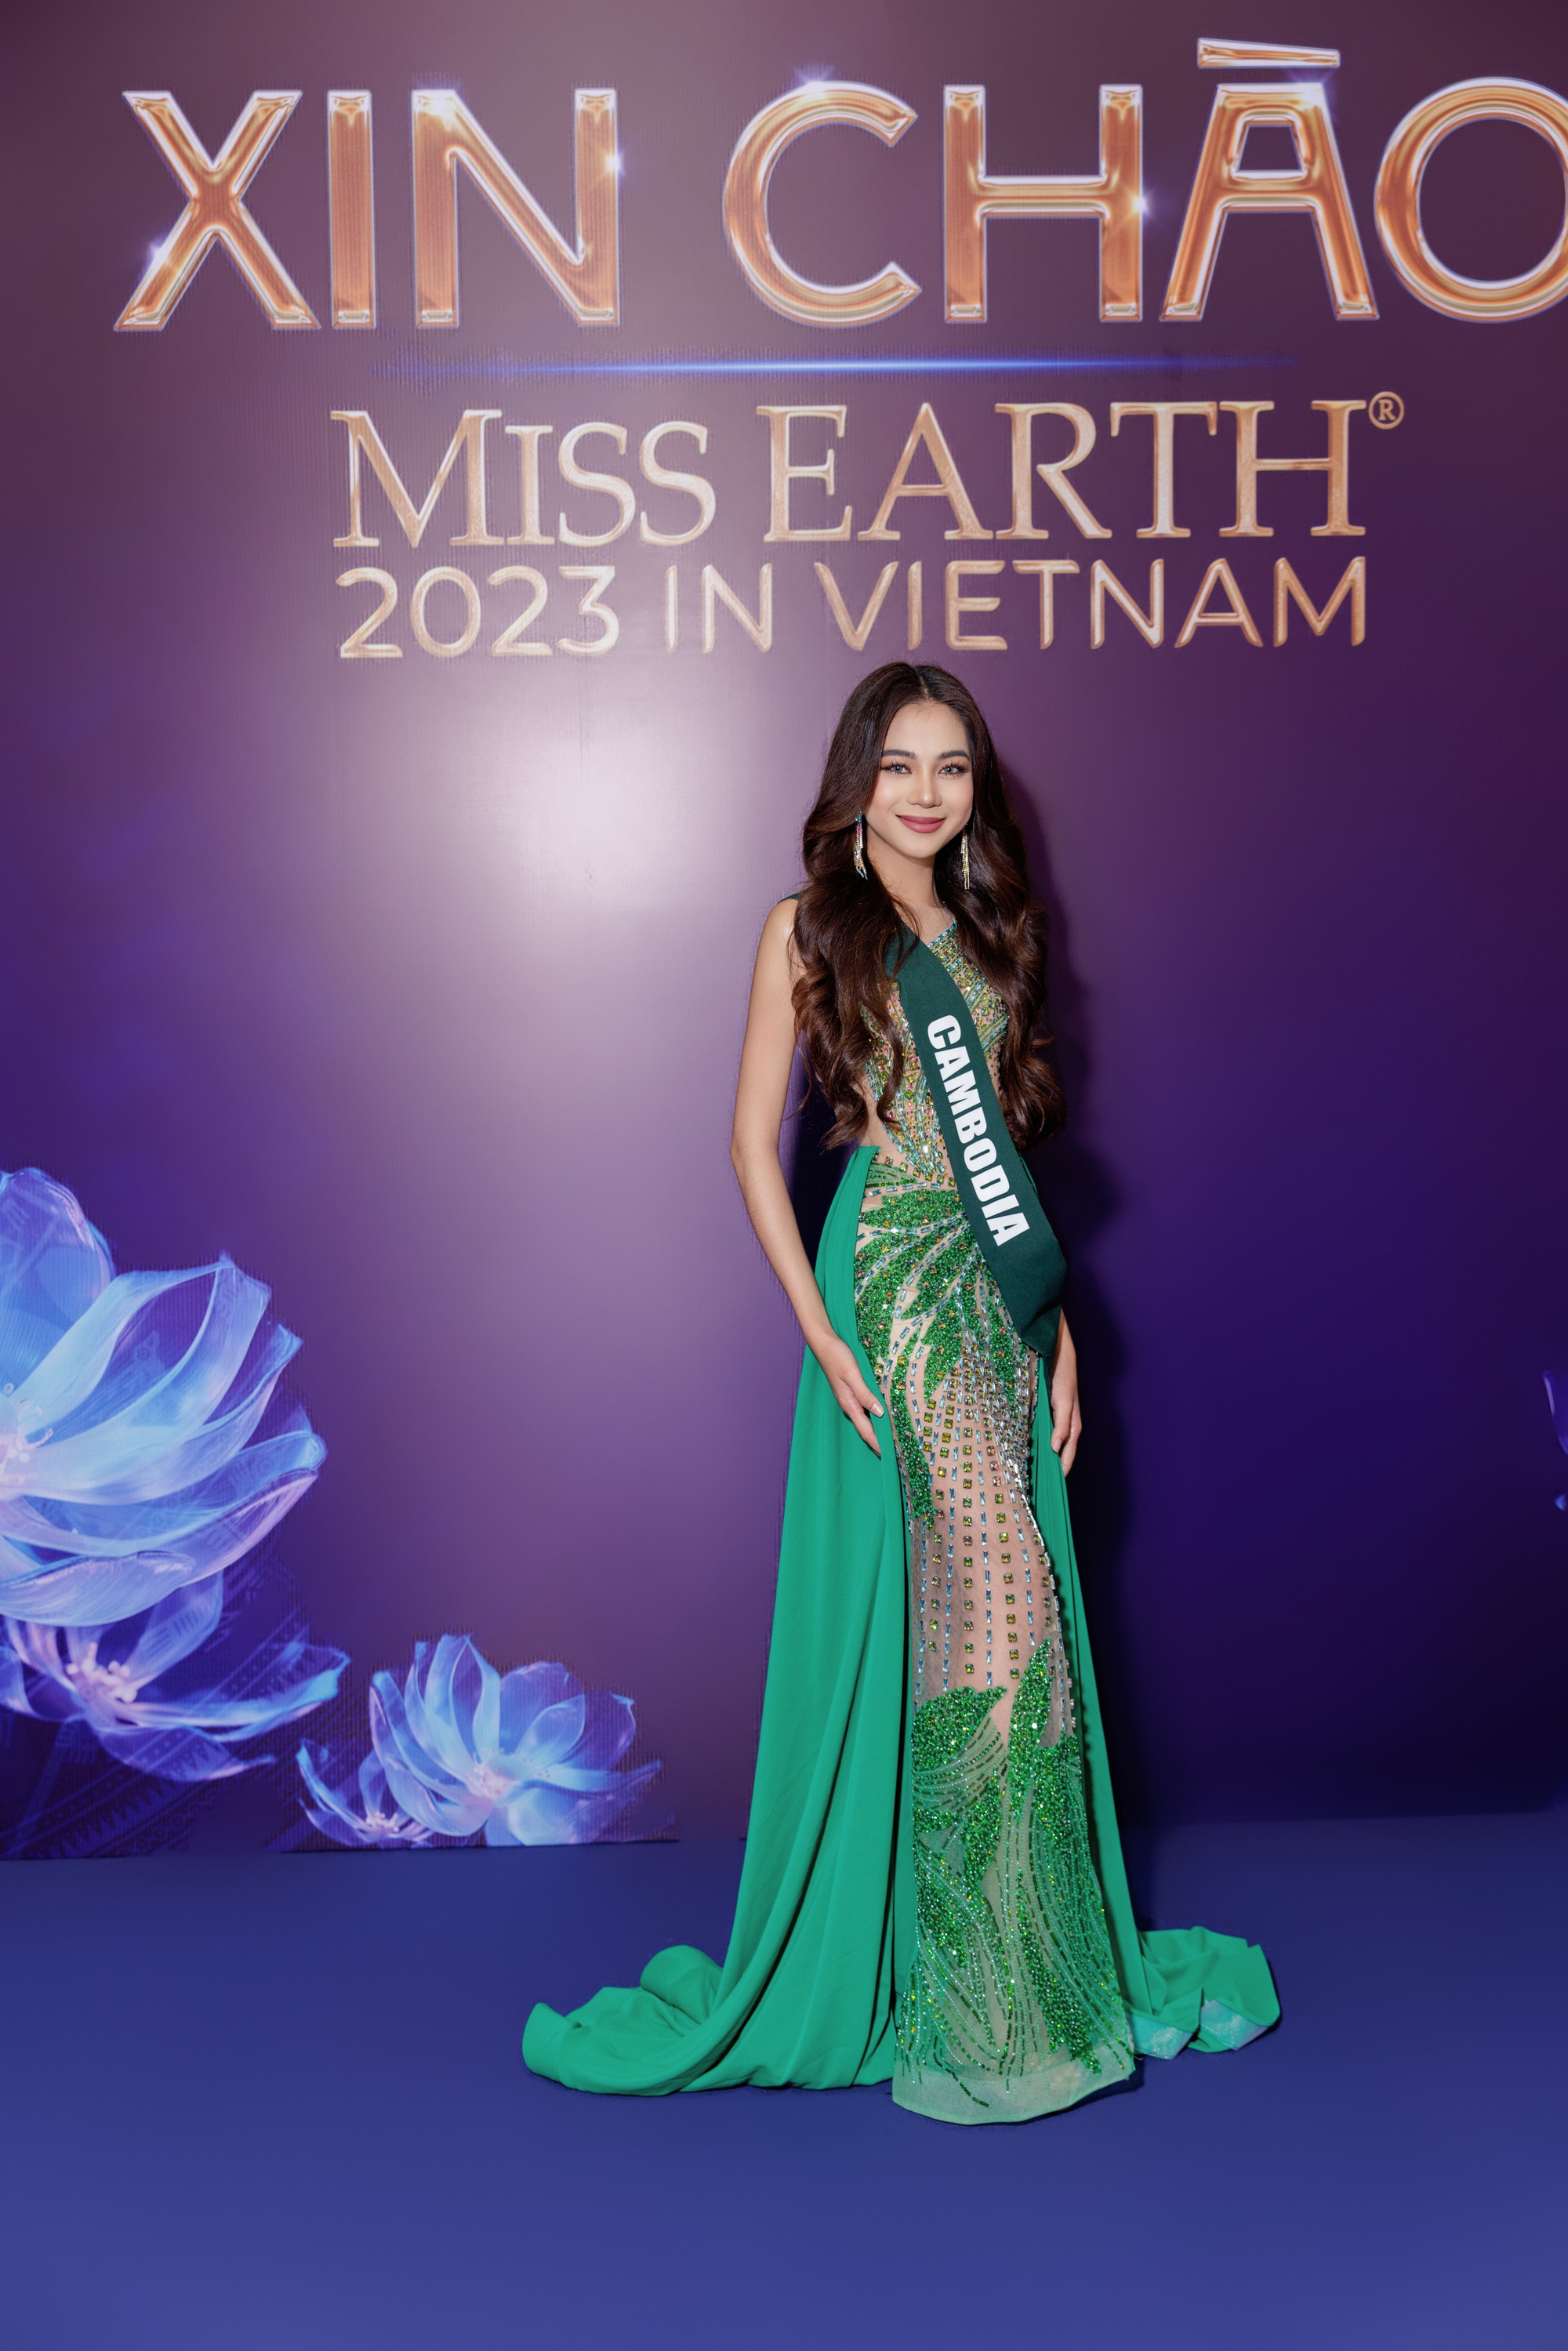 Váy dạ hội lộ nội y tràn ngập đêm bán kết Hoa hậu Hòa bình Thái Lan - 2sao